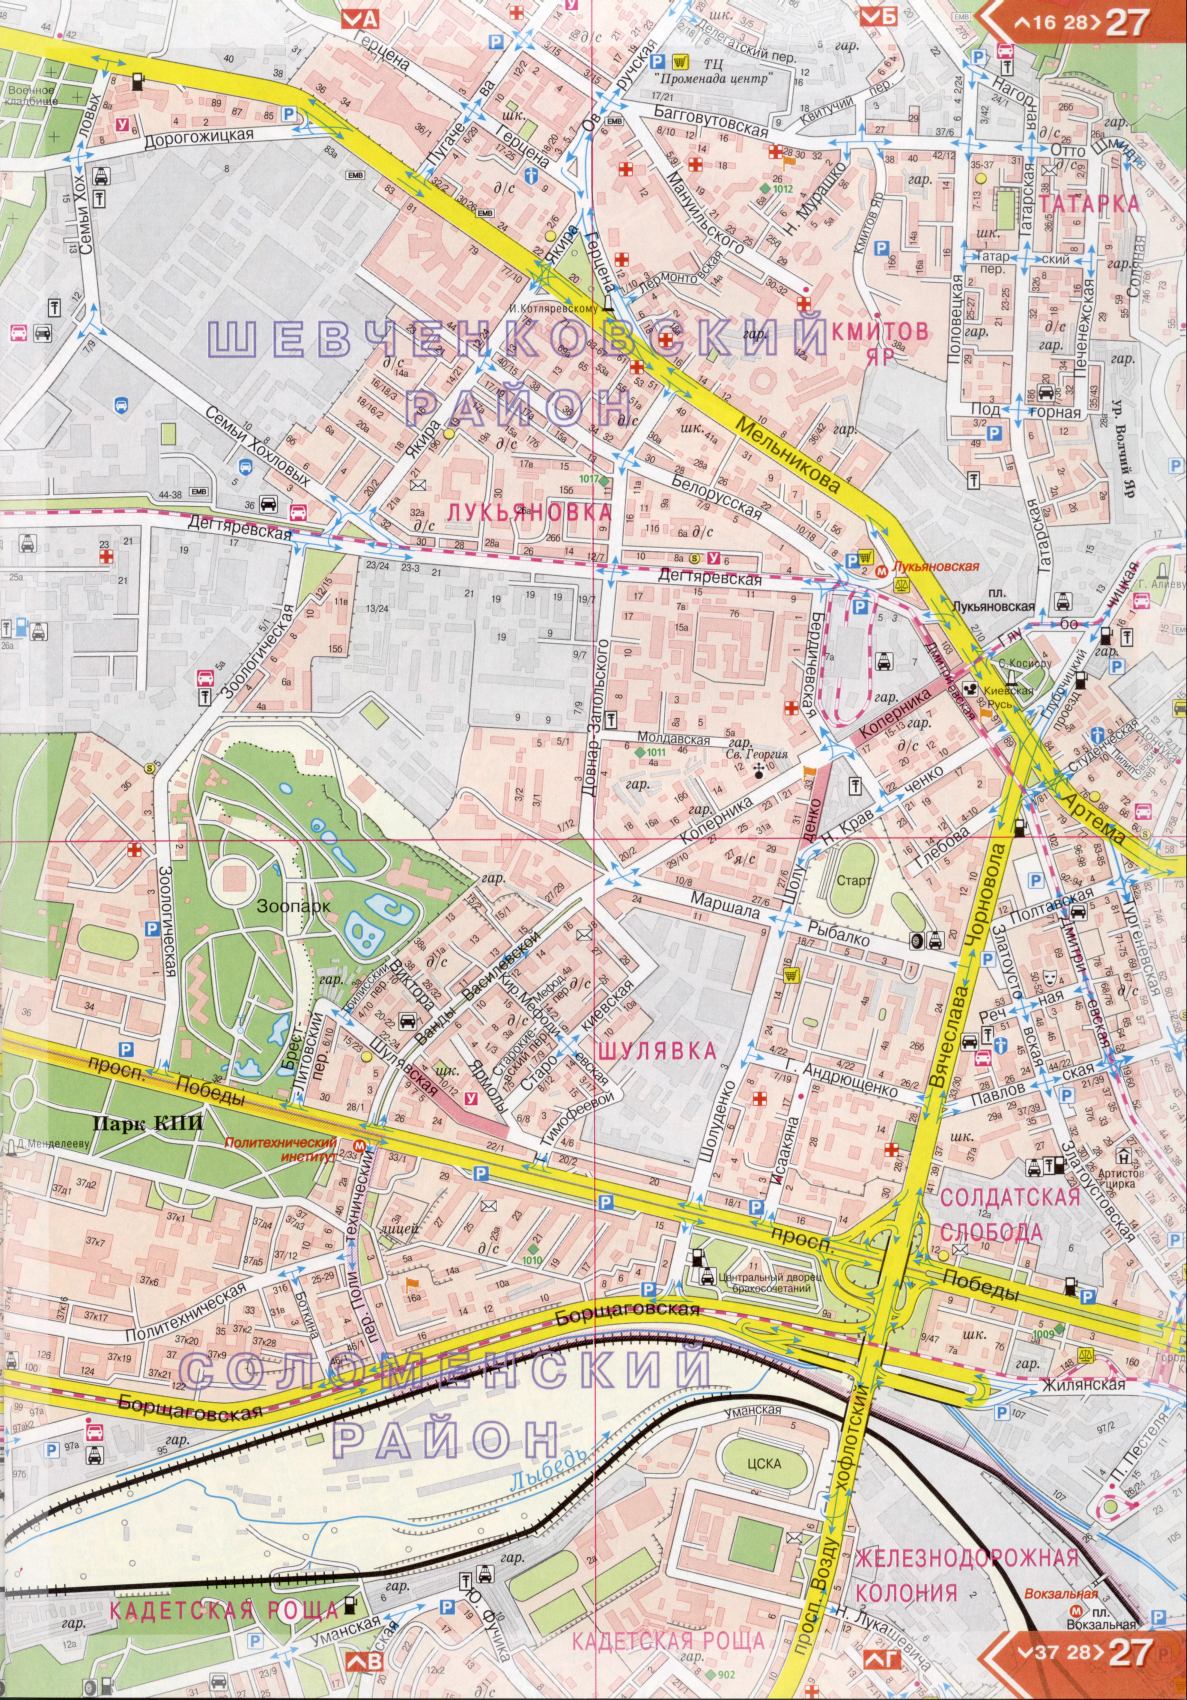 Карта Киева подробная в 1см=150м на 45 листах. Карта г.Киев из атласа автомобильных дорог. Скачать бесплатно подробную карту , D2 - Шулявка